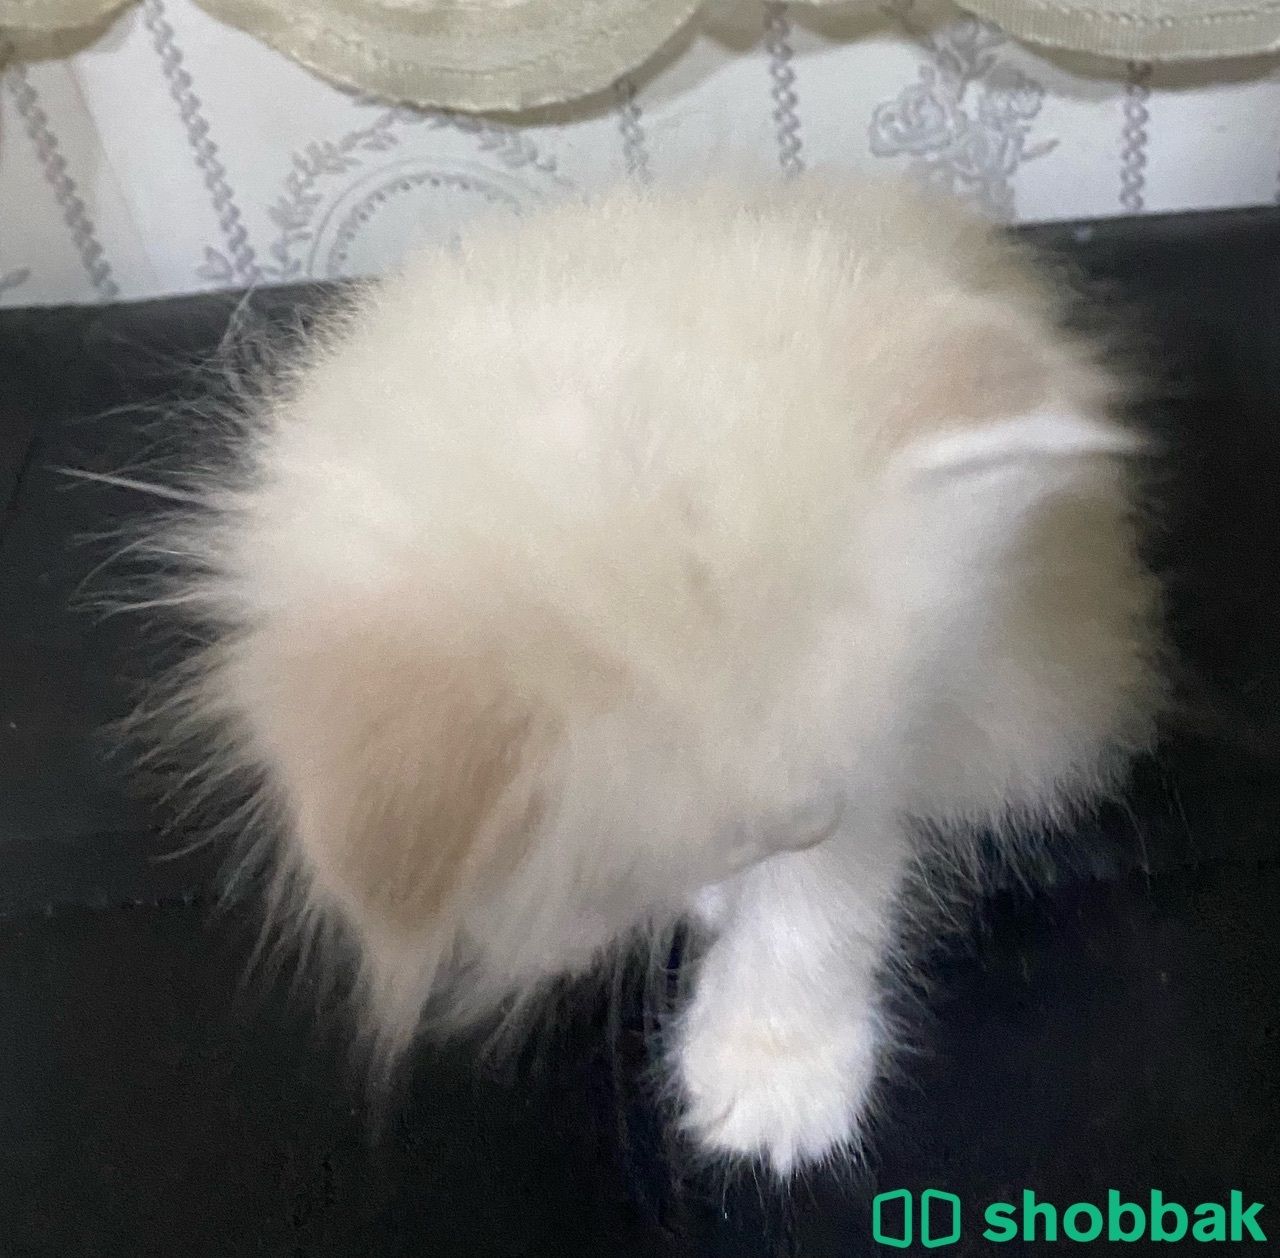 قطه هملايا صغيره للبيع Shobbak Saudi Arabia